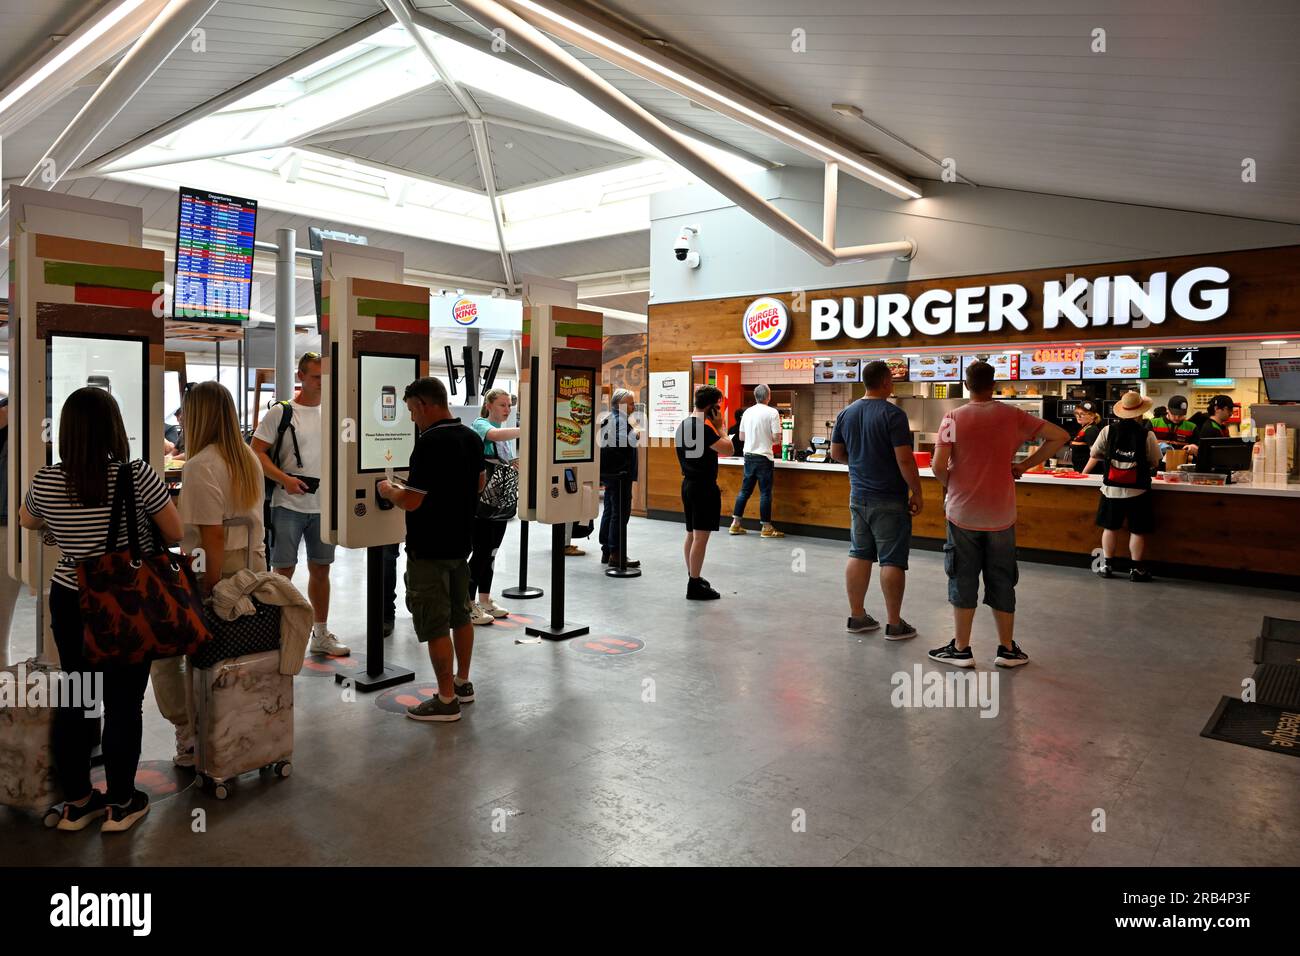 À l'intérieur du salon des départs de l'aéroport de Bristol, le restaurant Burger King propose des repas rapides Banque D'Images